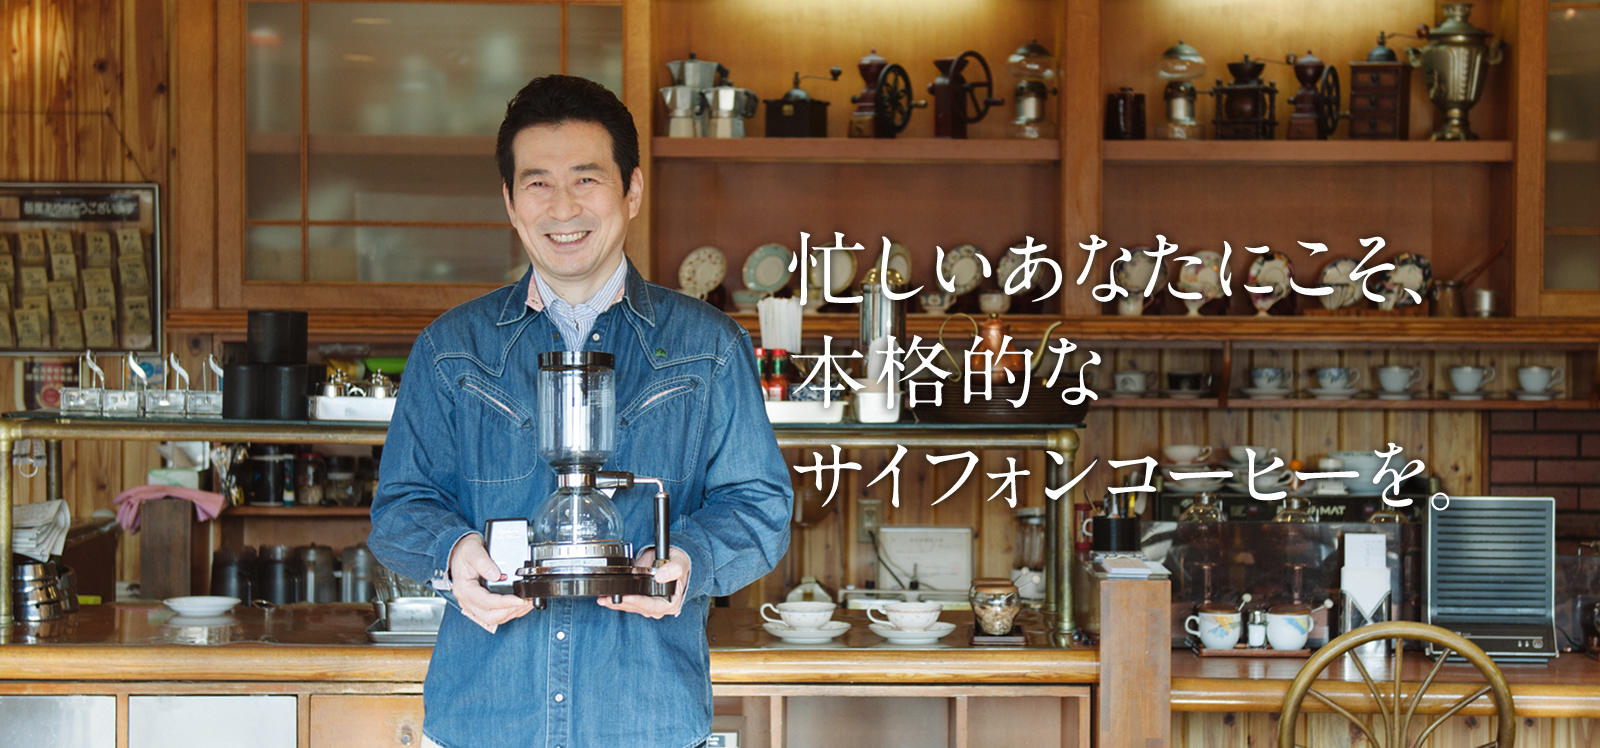 15357円 受賞店 TWINBIRD サイフォン式コーヒーメーカー ダークブラウン CM-D853BR